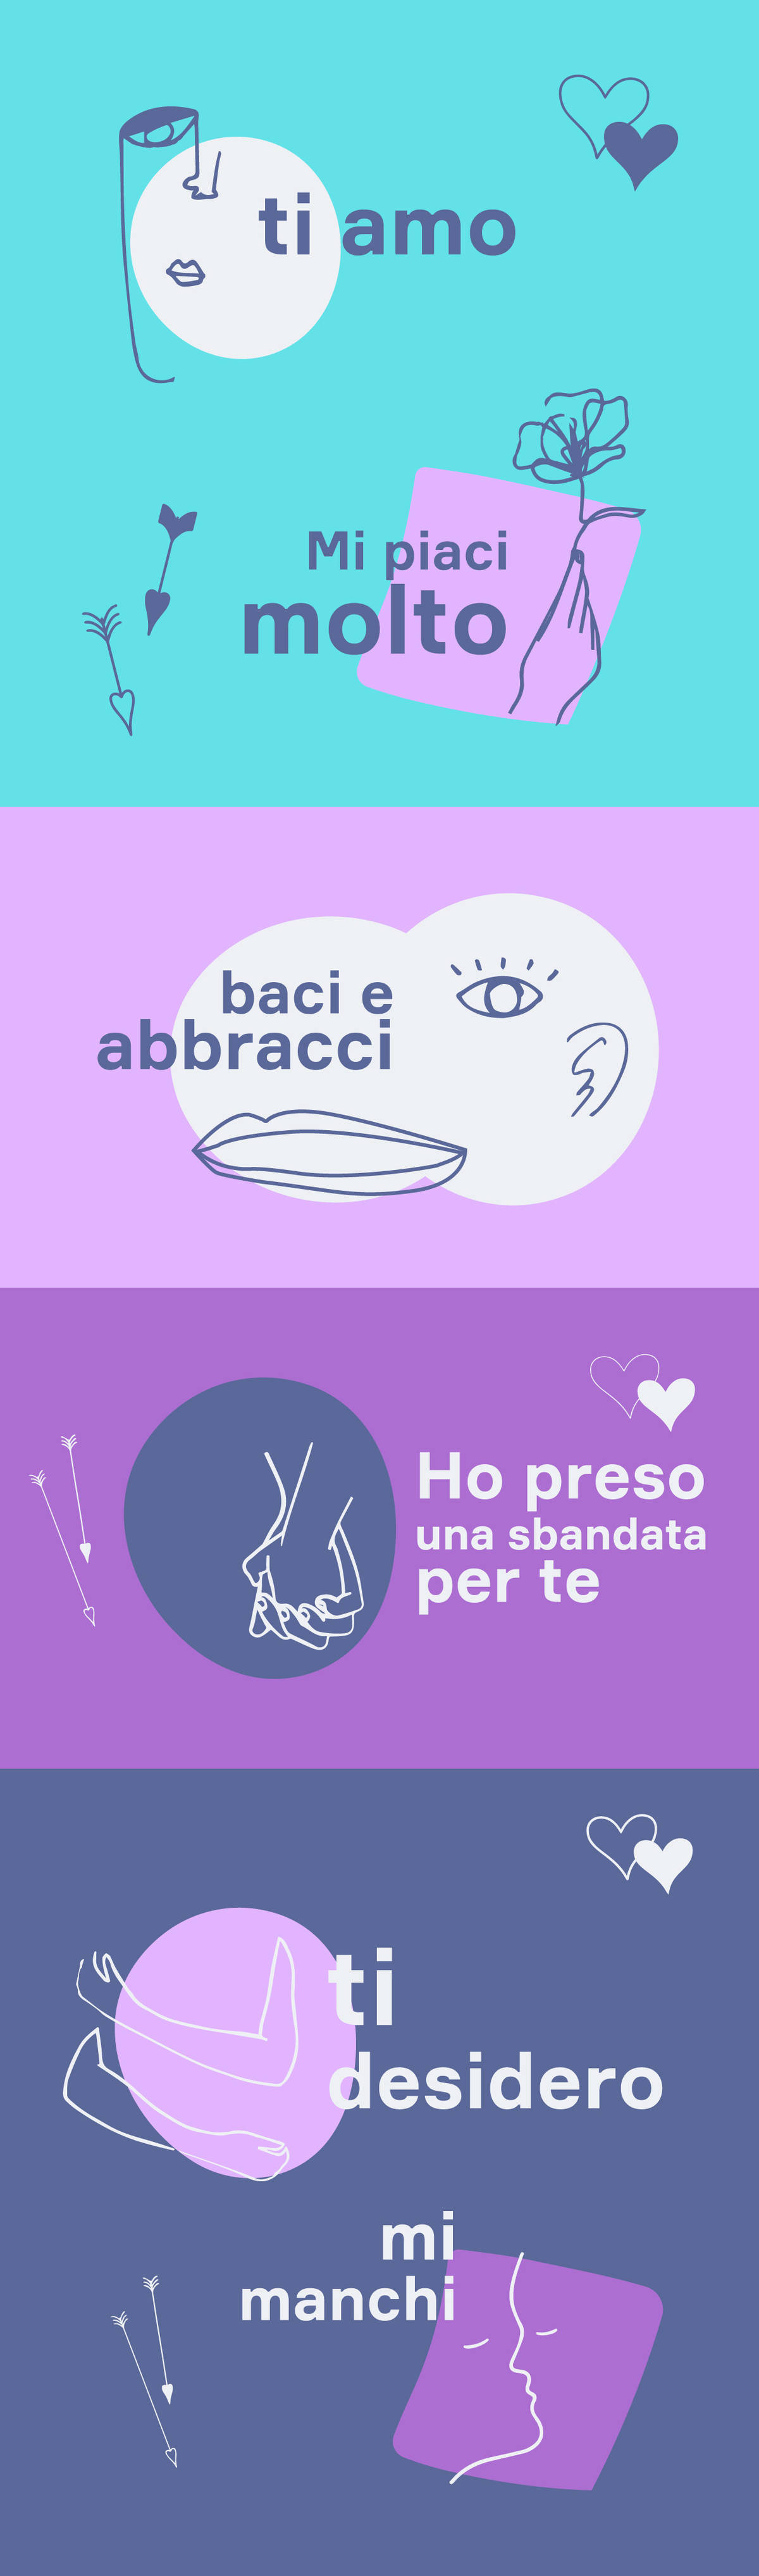 Italian Lesson 6  The difference between TI AMO and TI VOGLIO BENE 